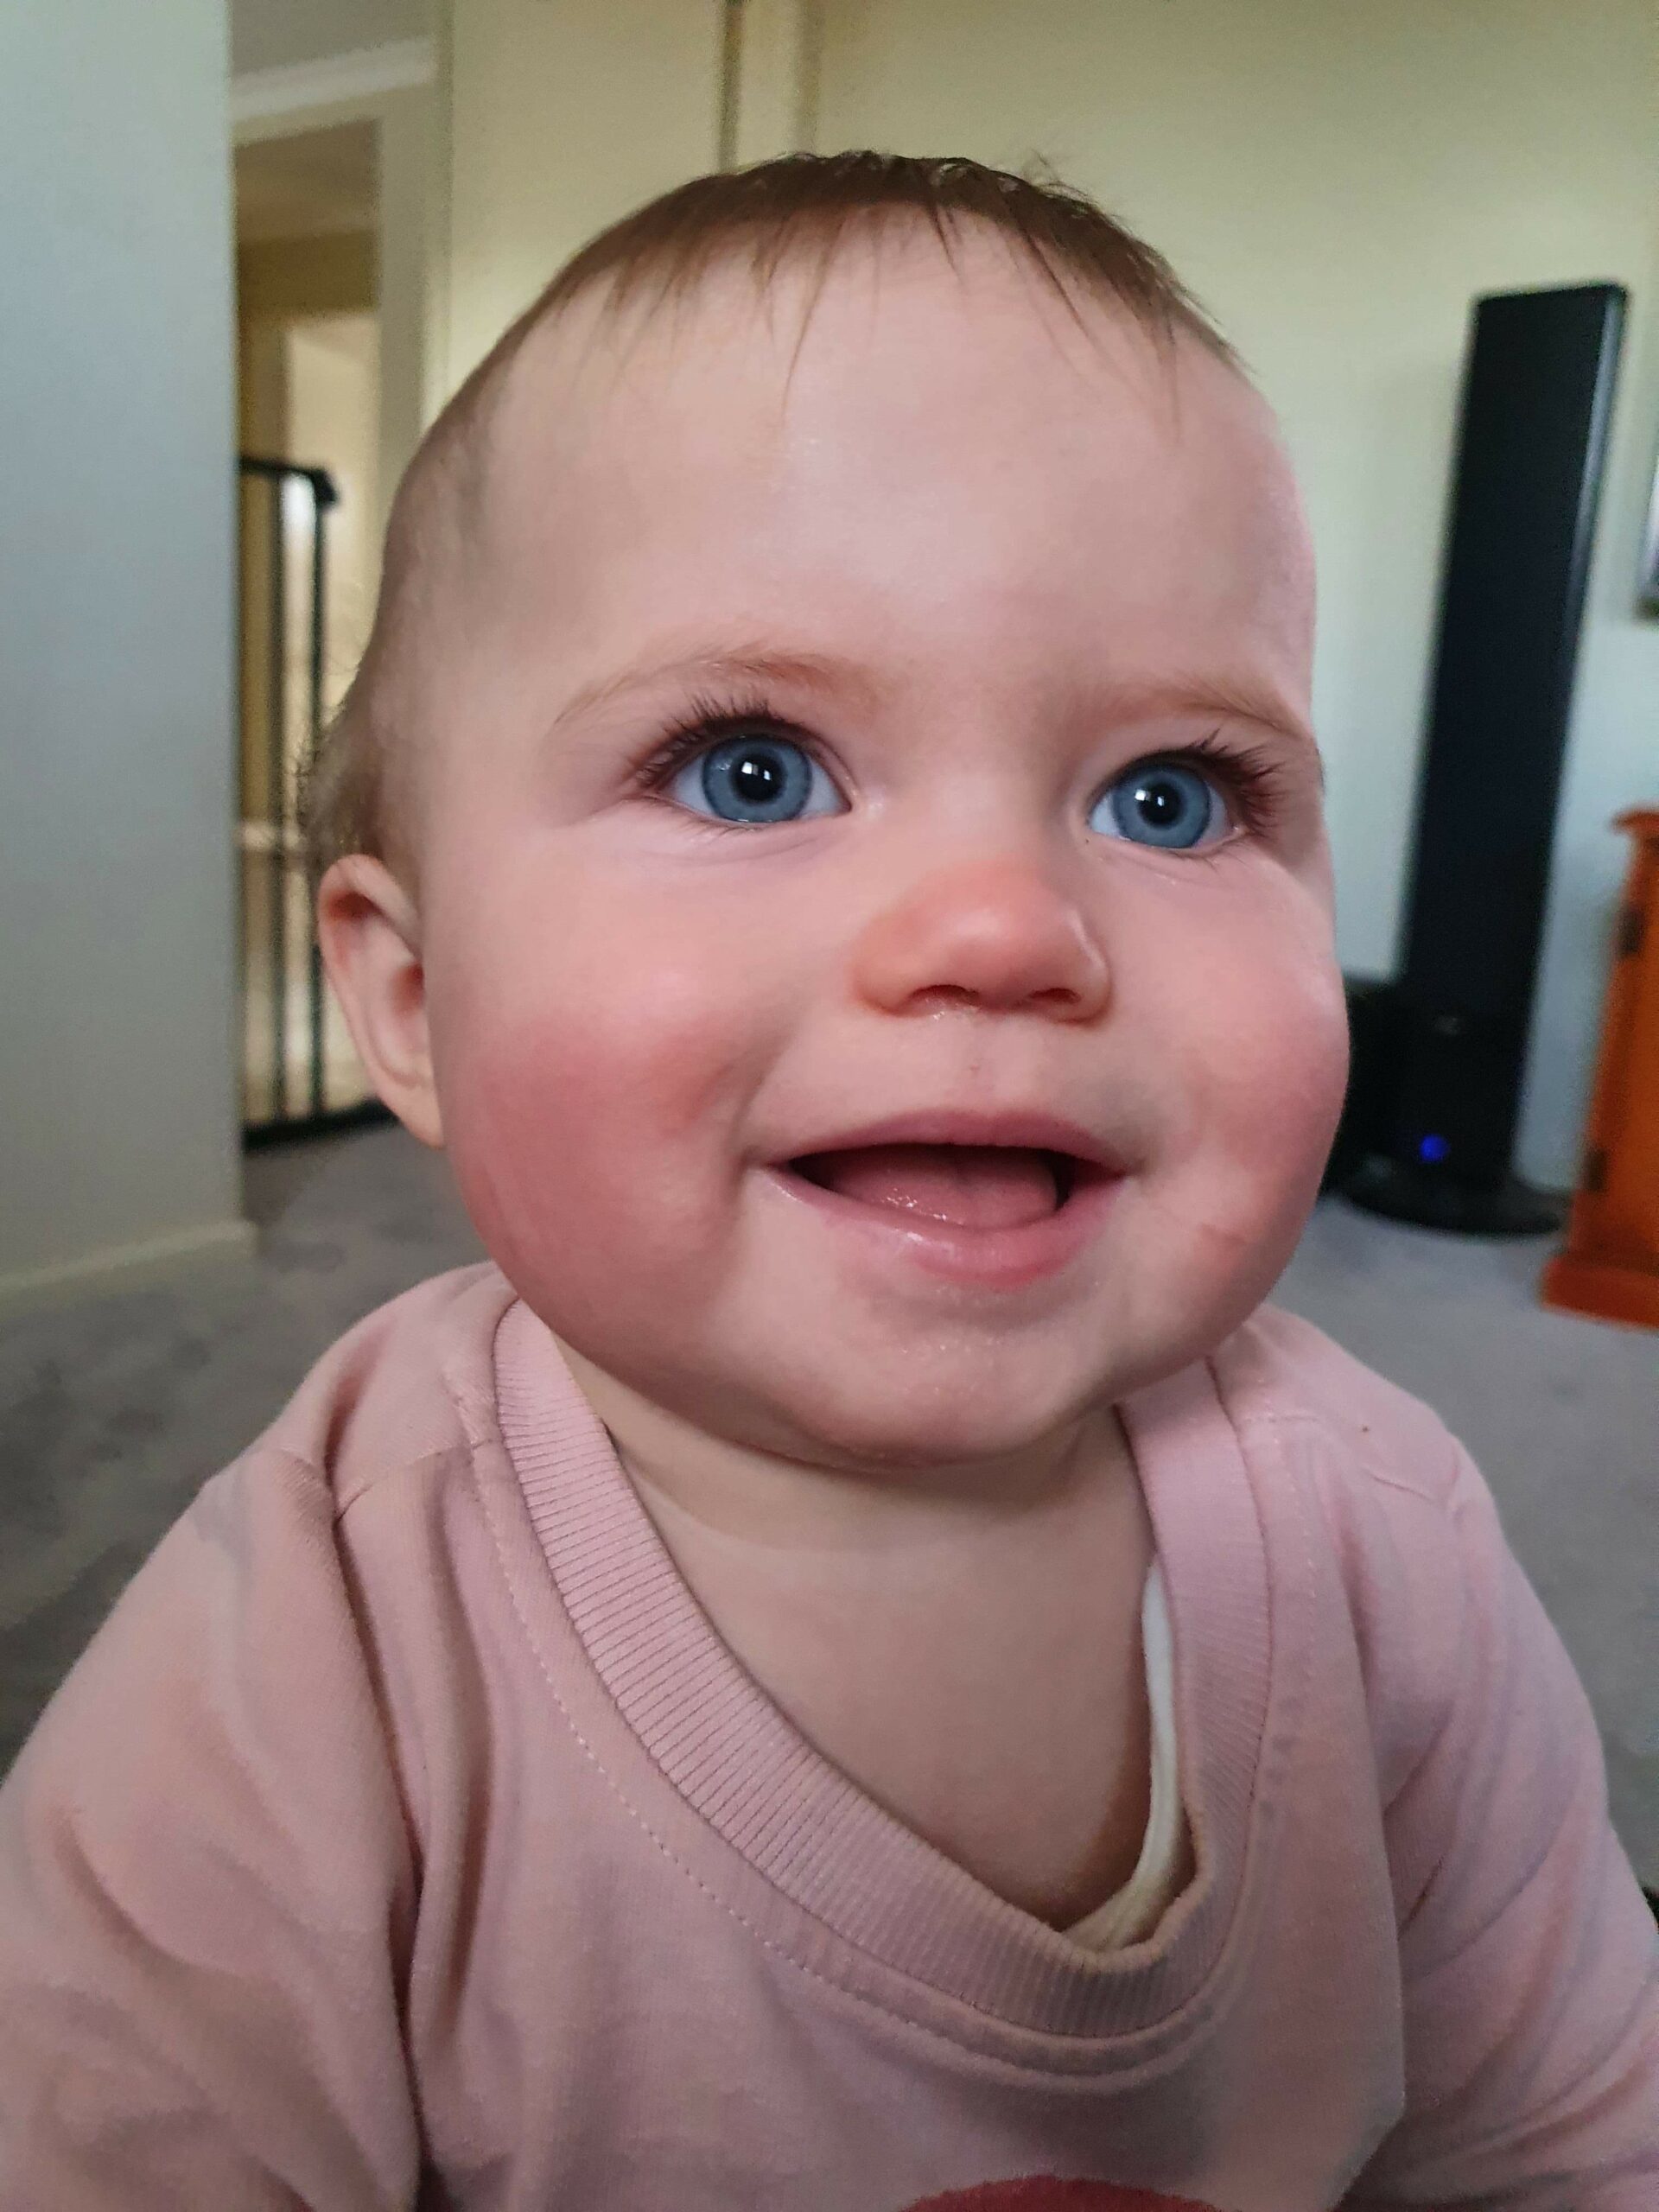 grey - eyed baby girl smiling